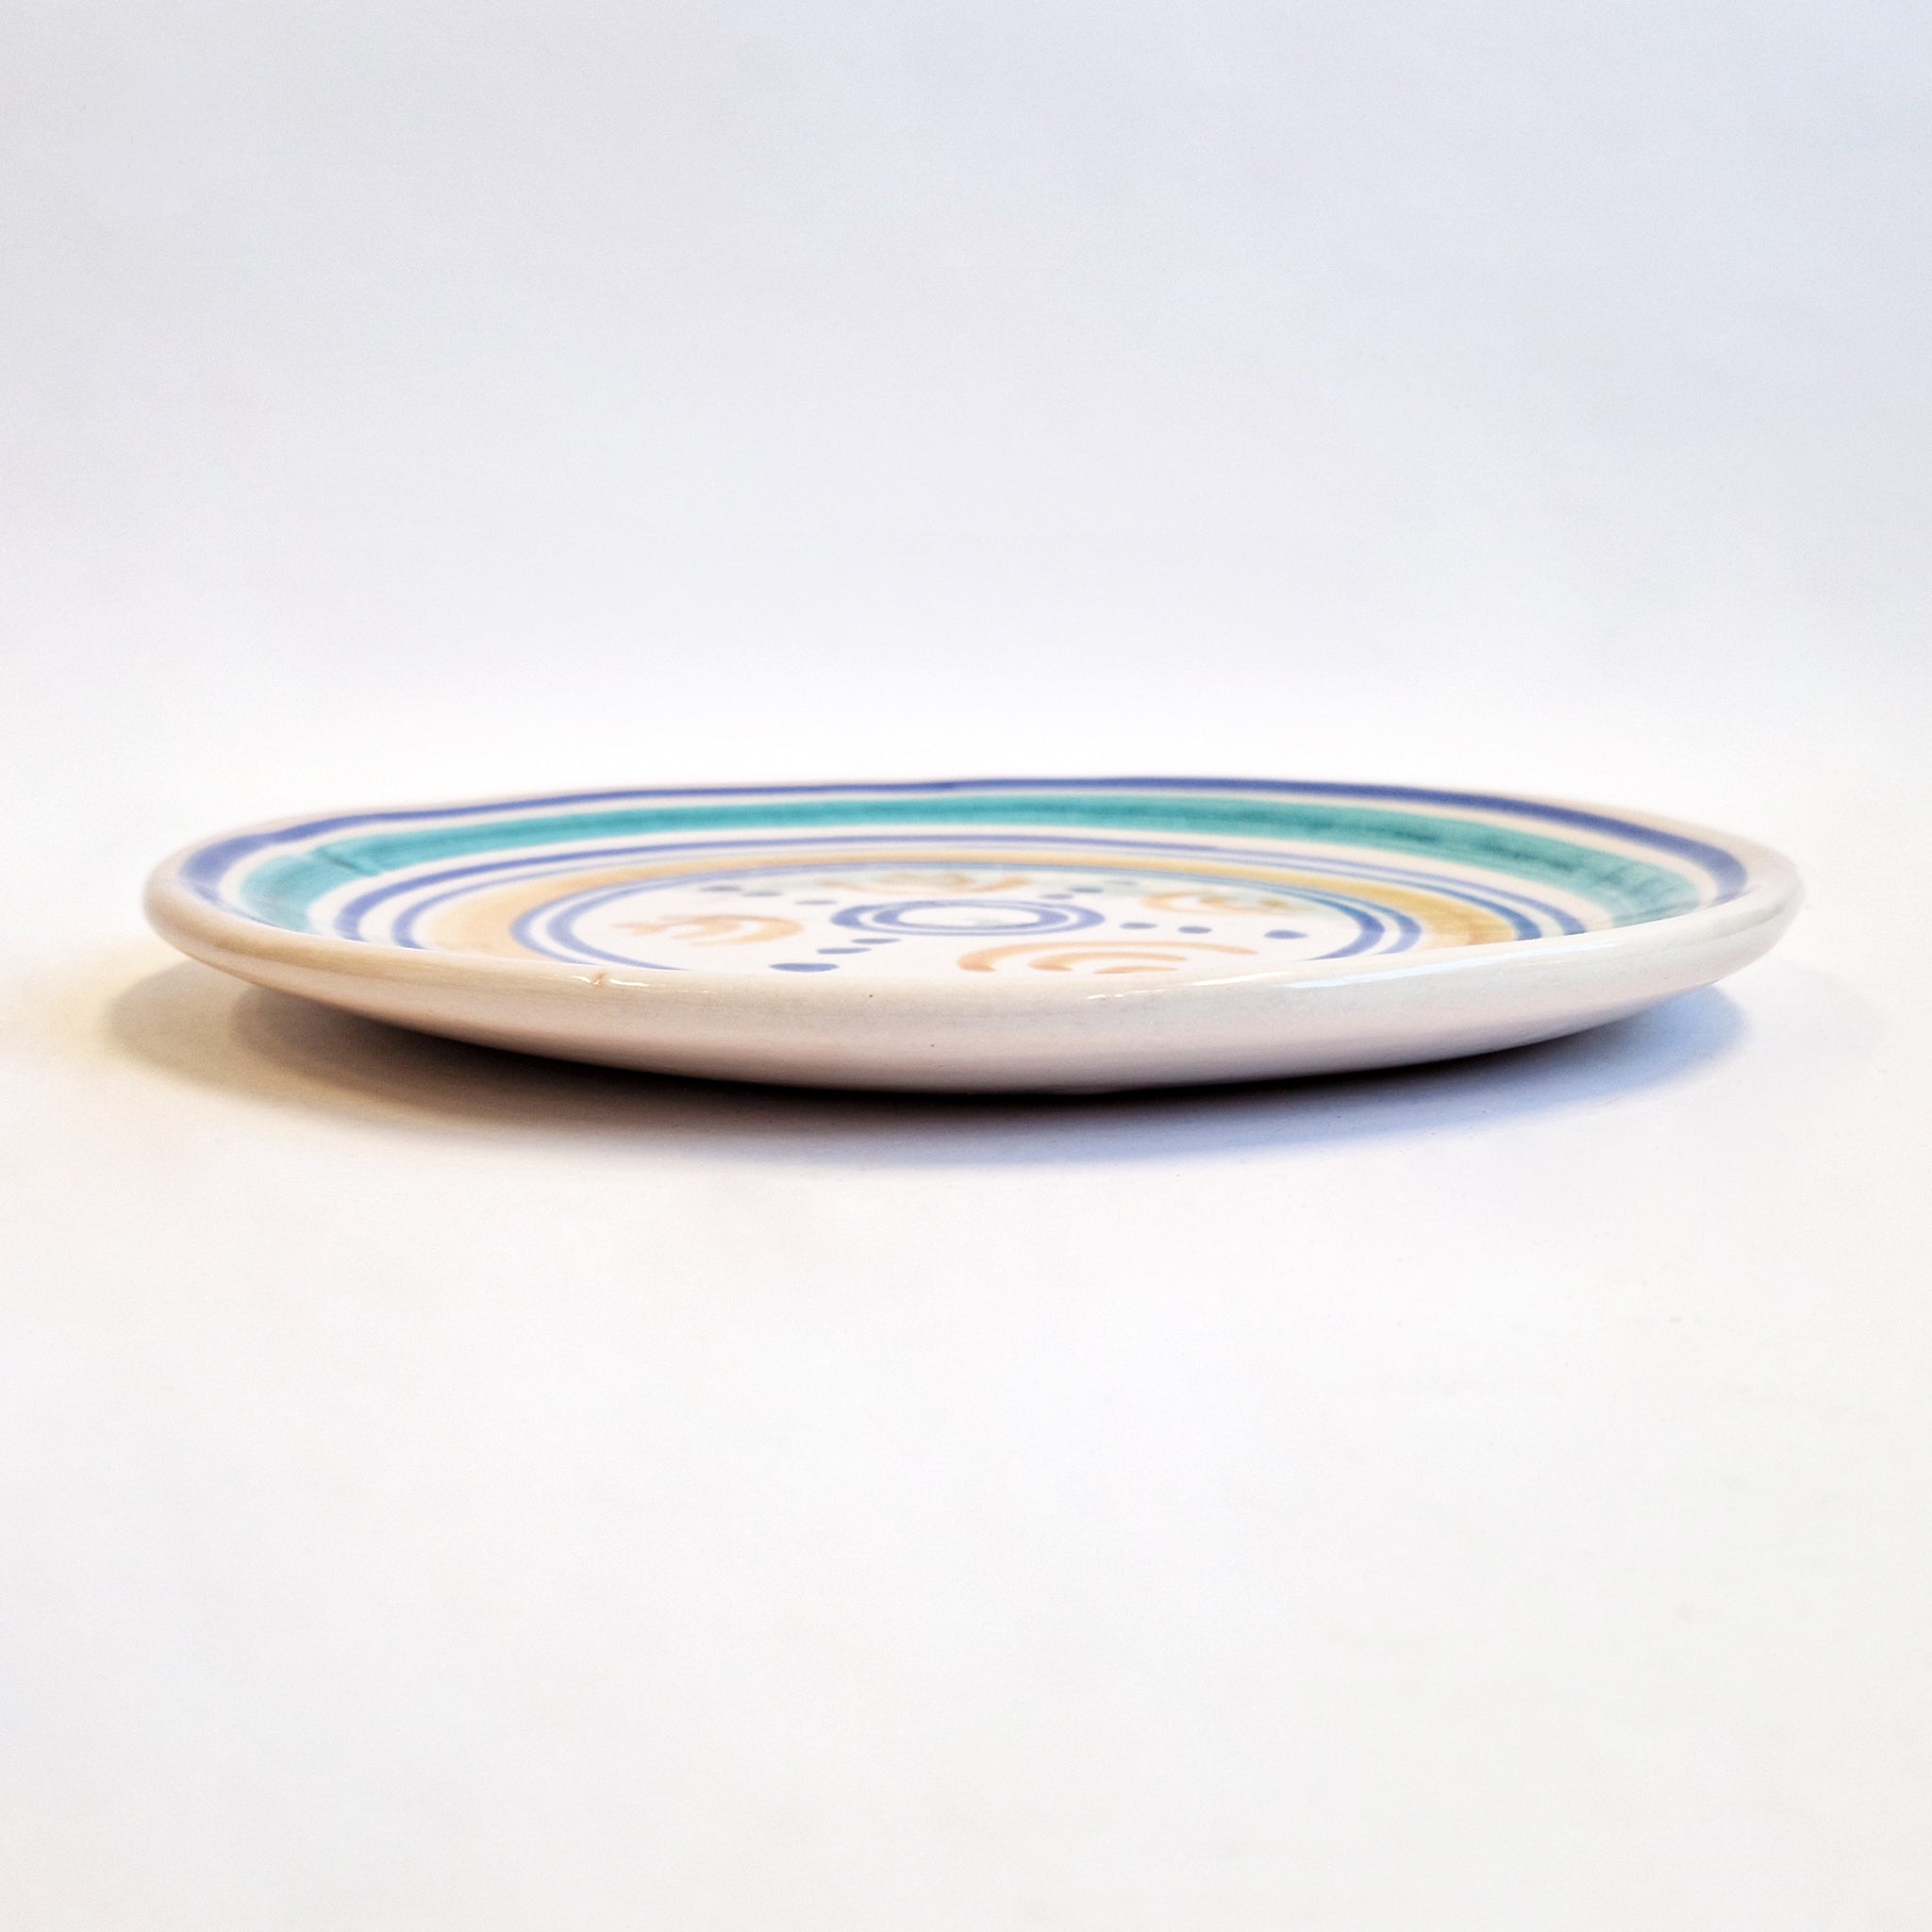 Vintage Italian ceramic plate